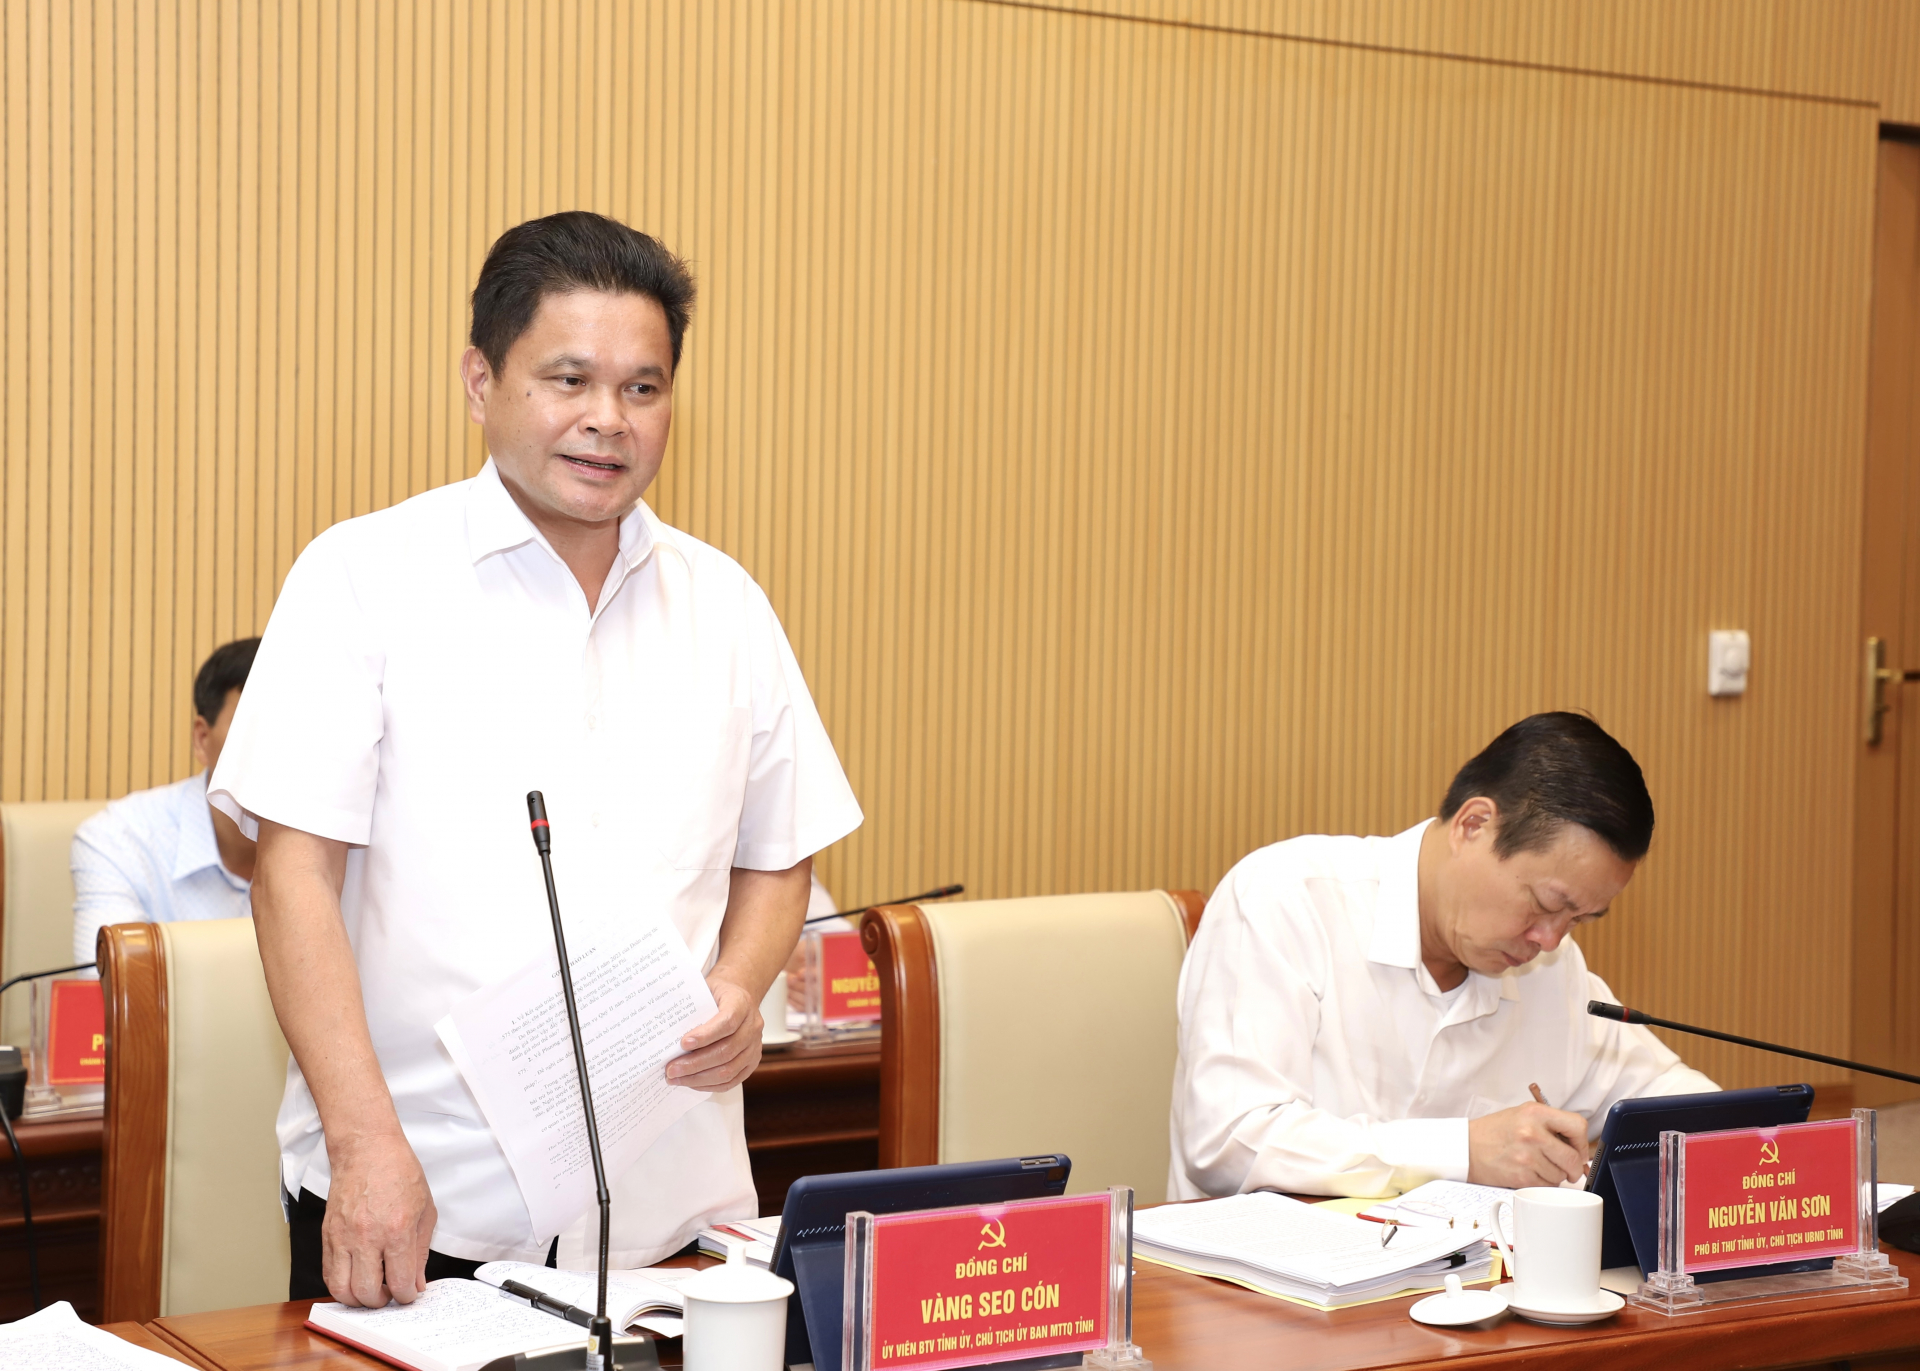 Chủ tịch Ủy ban MTTQ tỉnh Vàng Seo Cón đề xuất quan tâm đầu tư nâng cấp các tuyến đường huyện, liên xã và trụ sở các xã